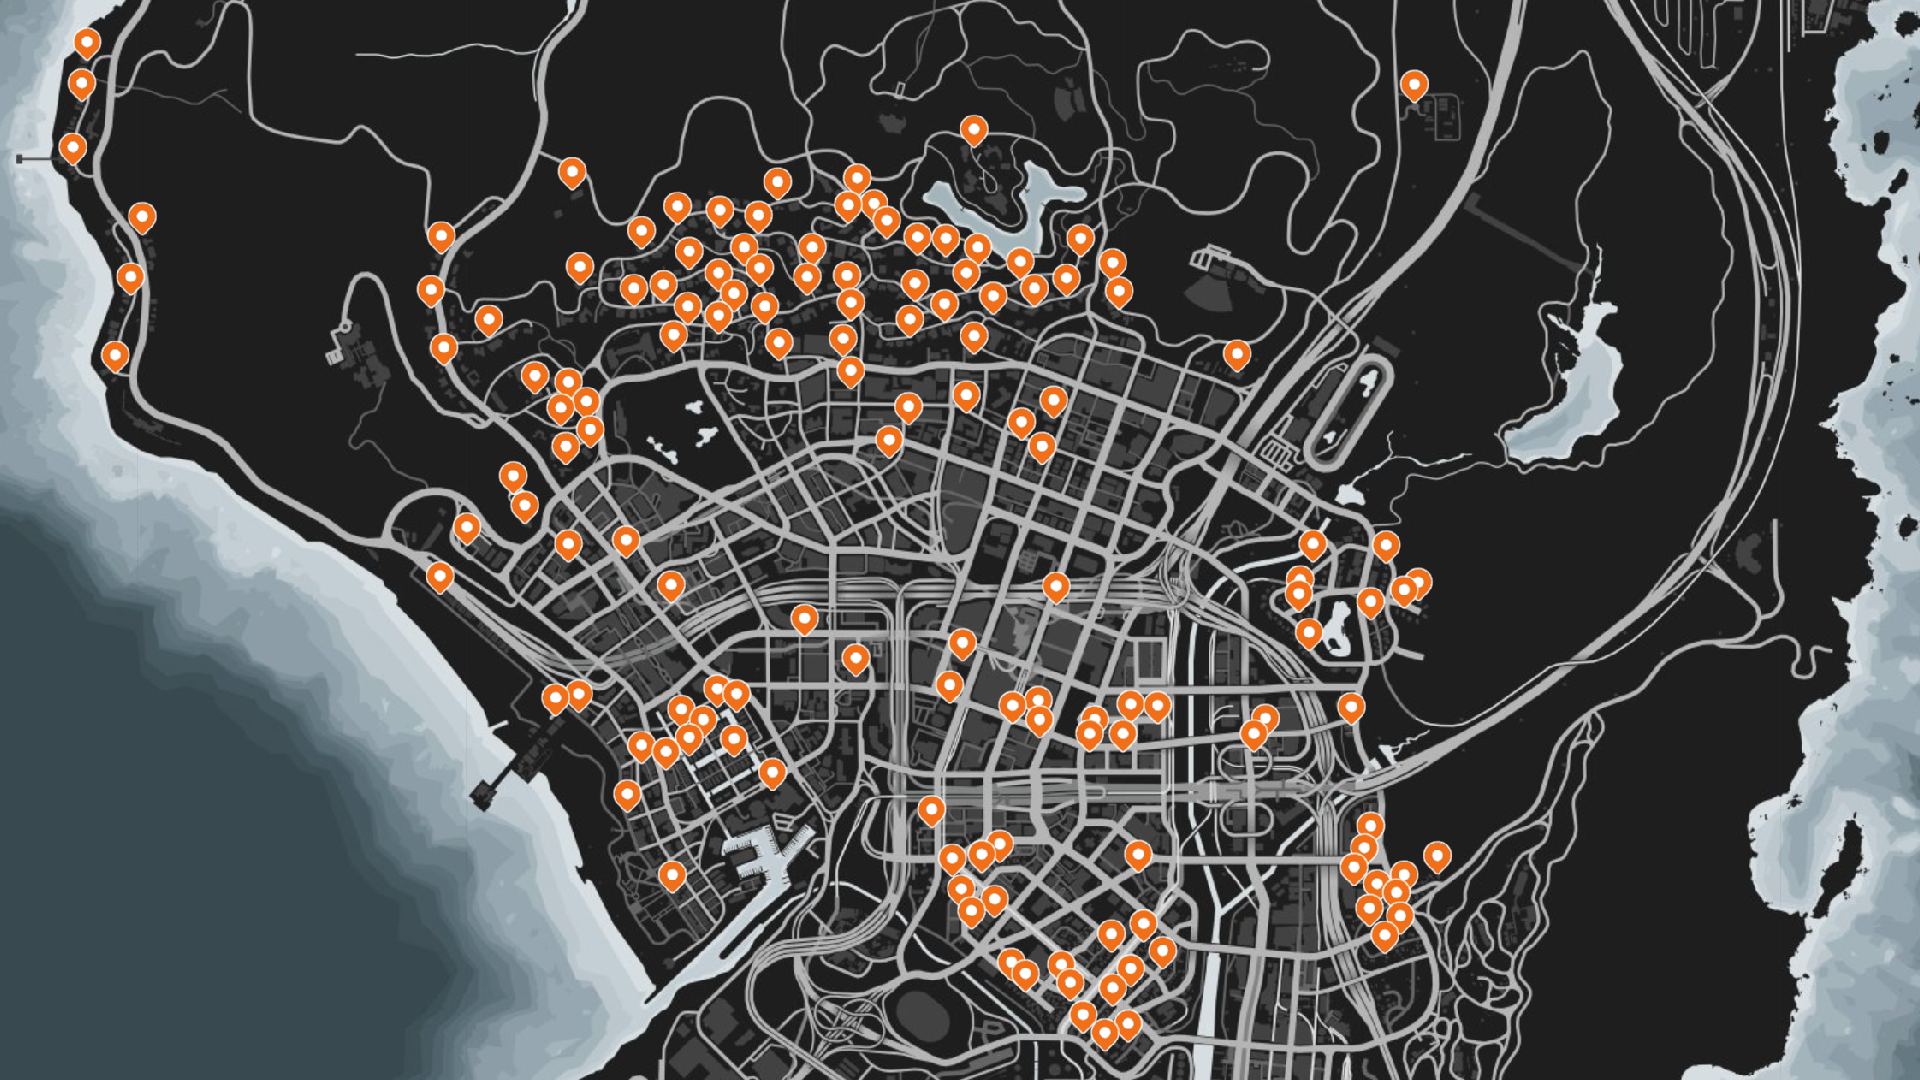 Emplacements de Jack O Lantern dans GTA Online : quelques-uns des emplacements sélectionnés sur la carte peuvent être vus